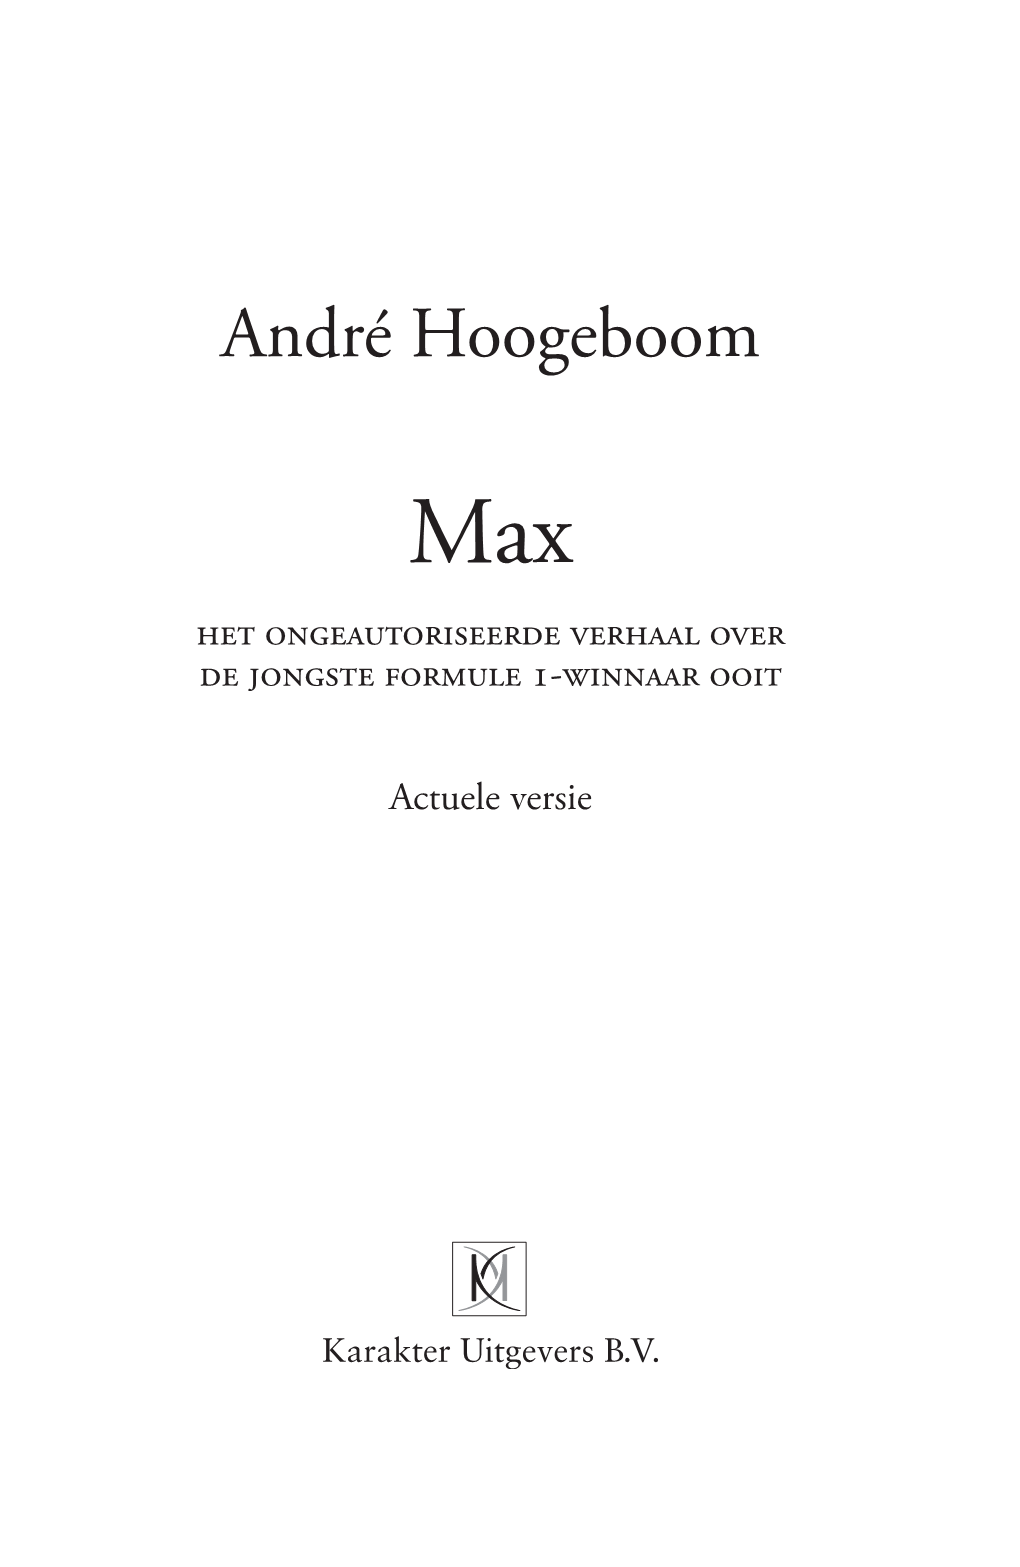 André Hoogeboom